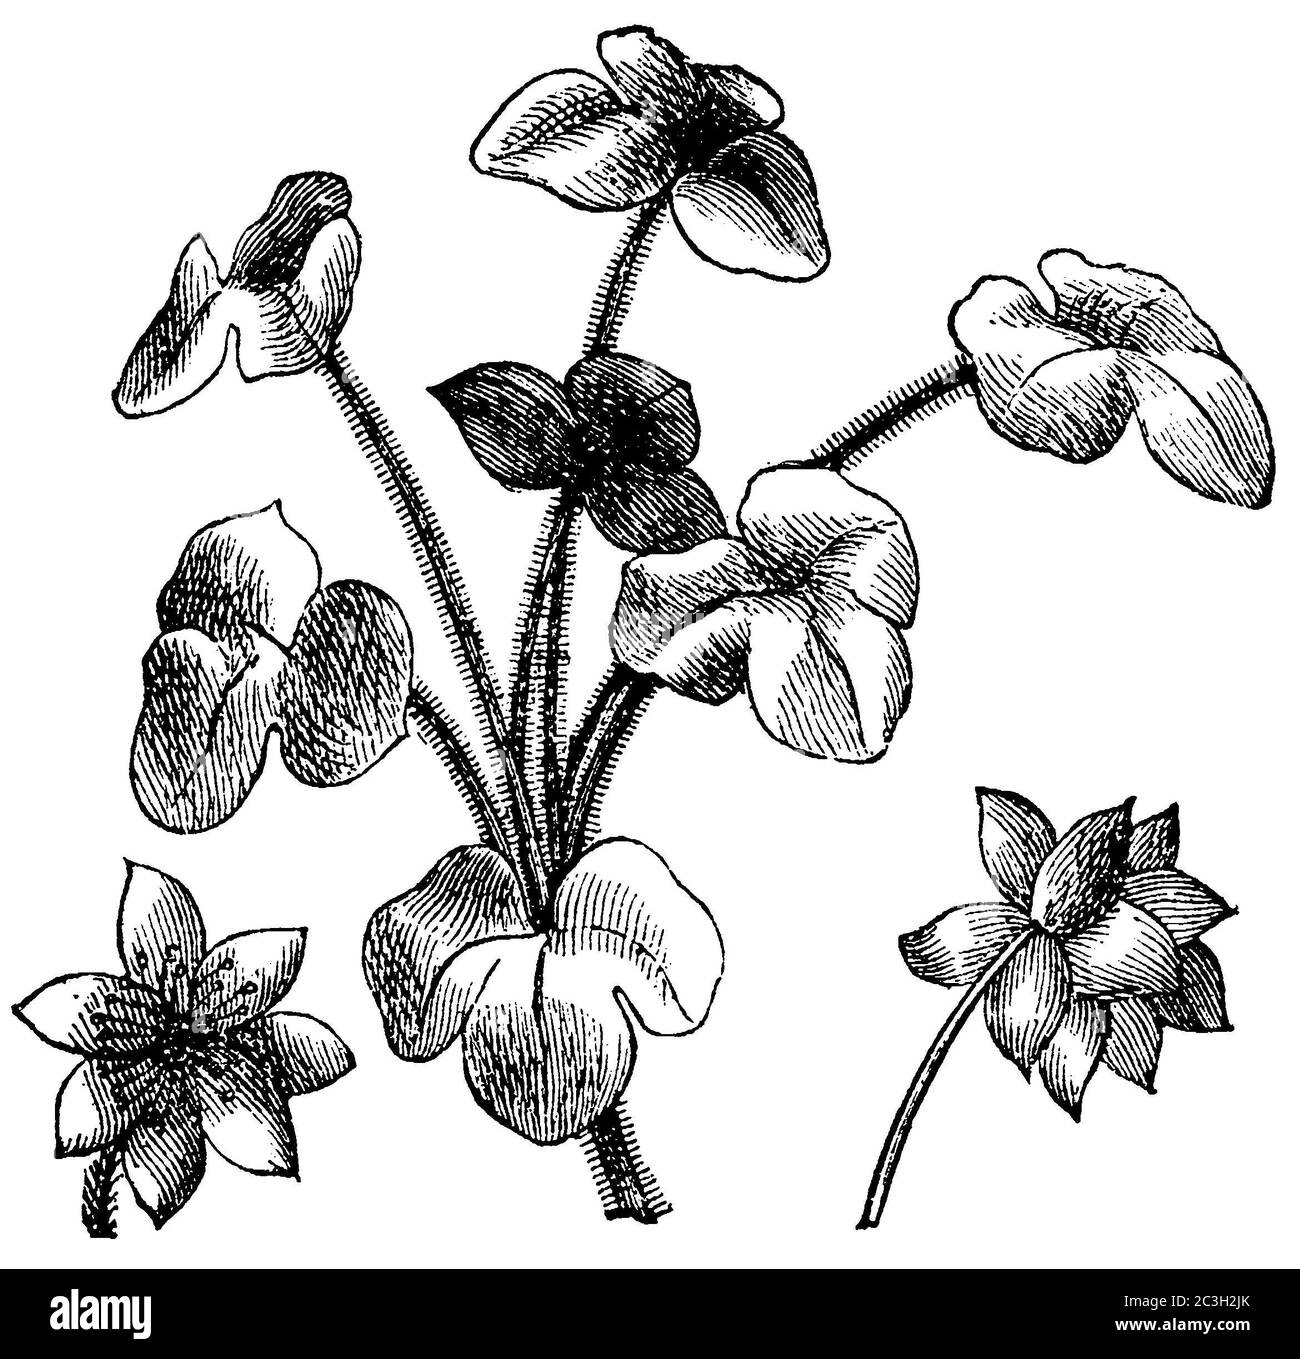 liverwort / Hepatica nobilis, Syn.: Anemone hepatica, Hepatica triloba / Leberblümchen (biology book, 1898) Stock Photo